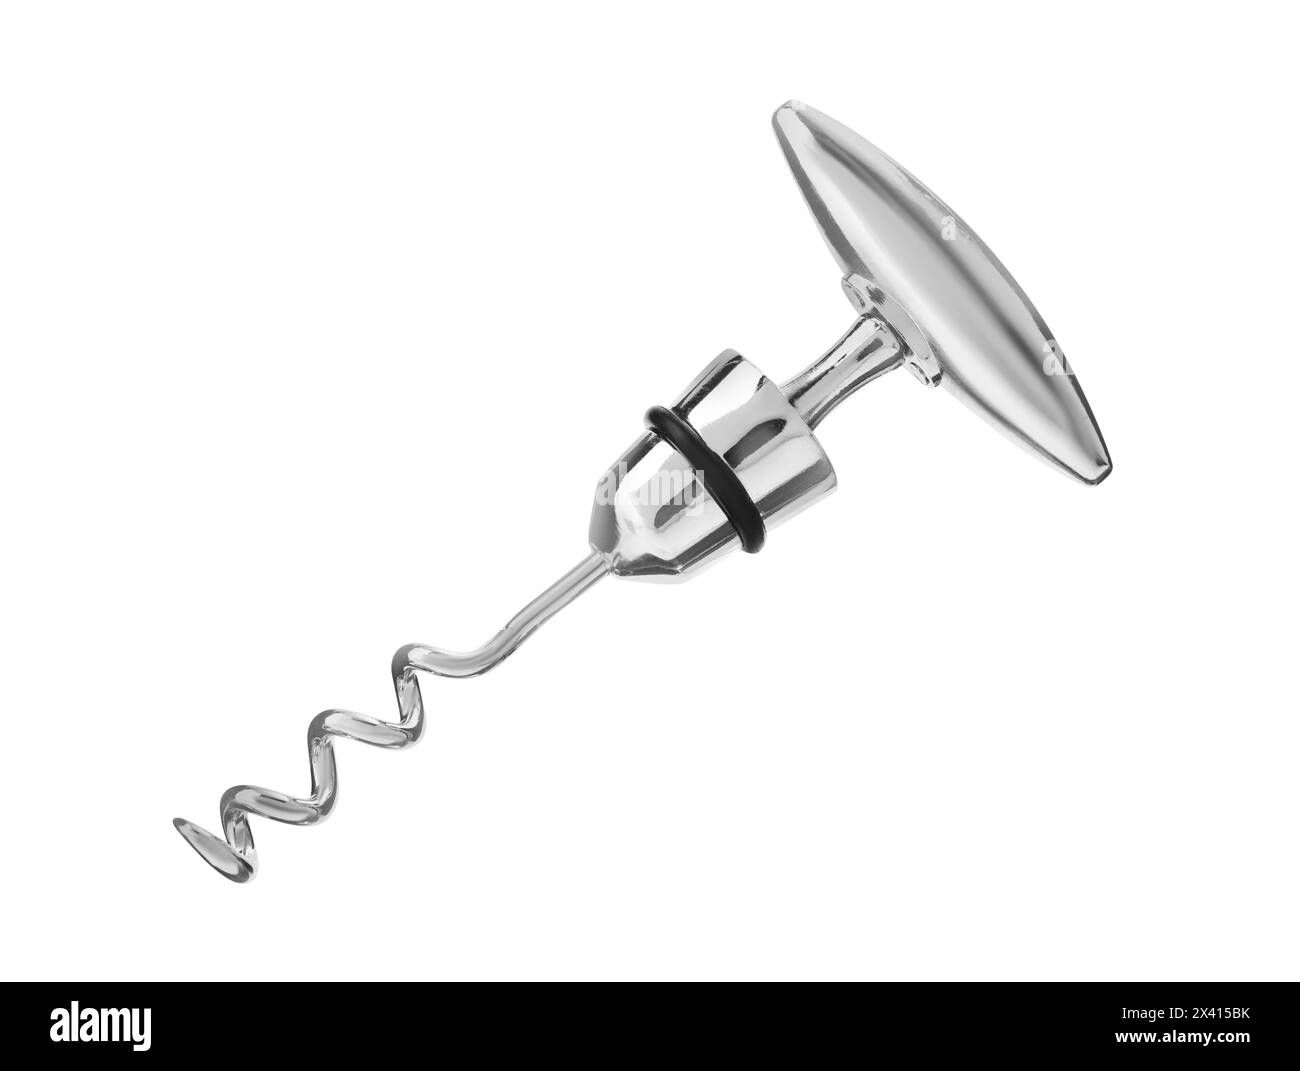 One metal corkscrew isolated on white. Kitchen utensil Stock Photo